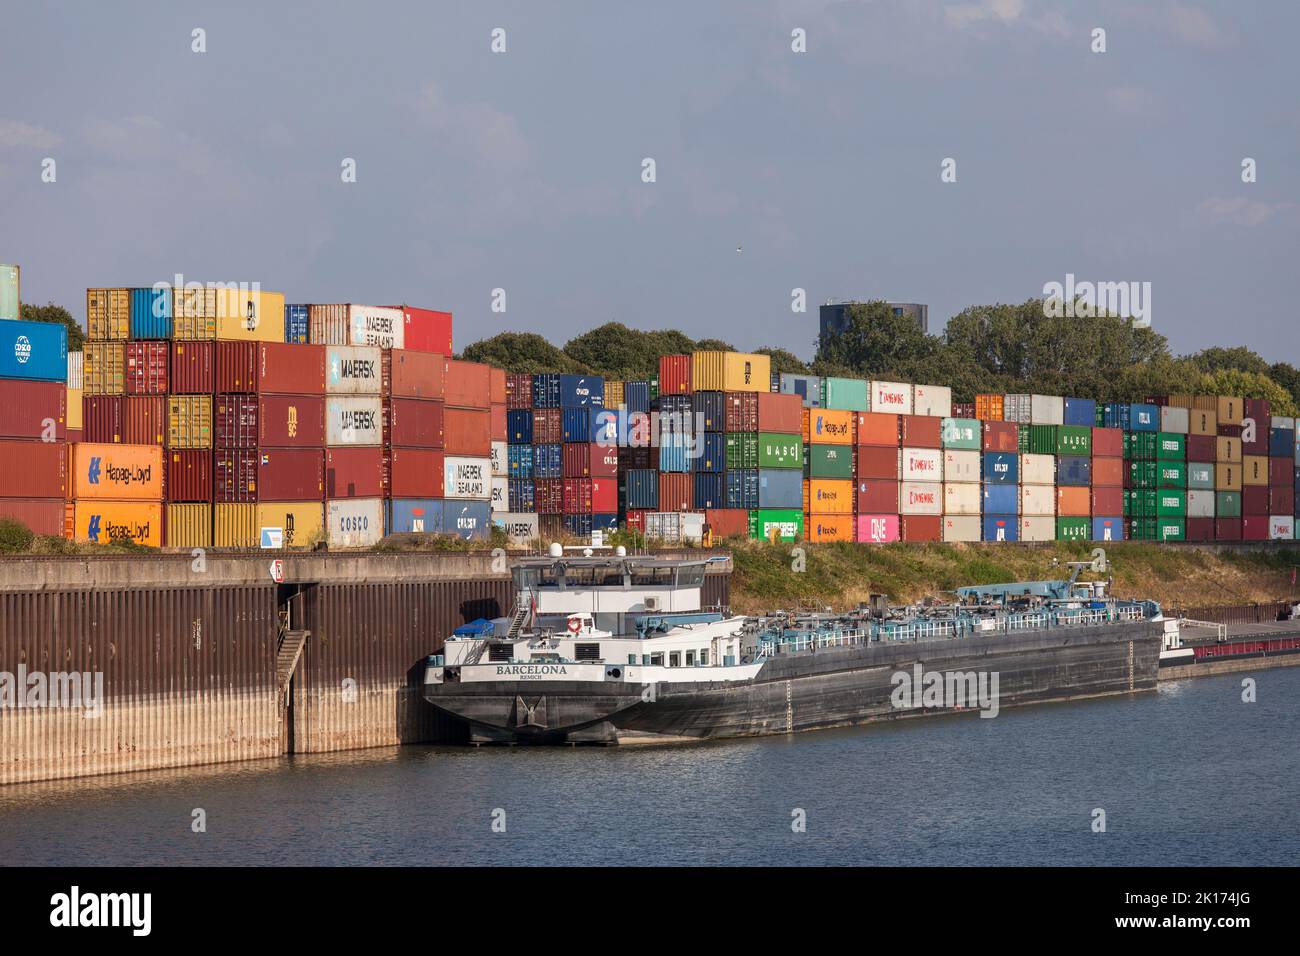 La terminal de contenedores en el puerto Niehl del Rin, Colonia, Alemania. Terminal de contenedores im Niehler Hafen, Koeln, Alemania. Foto de stock